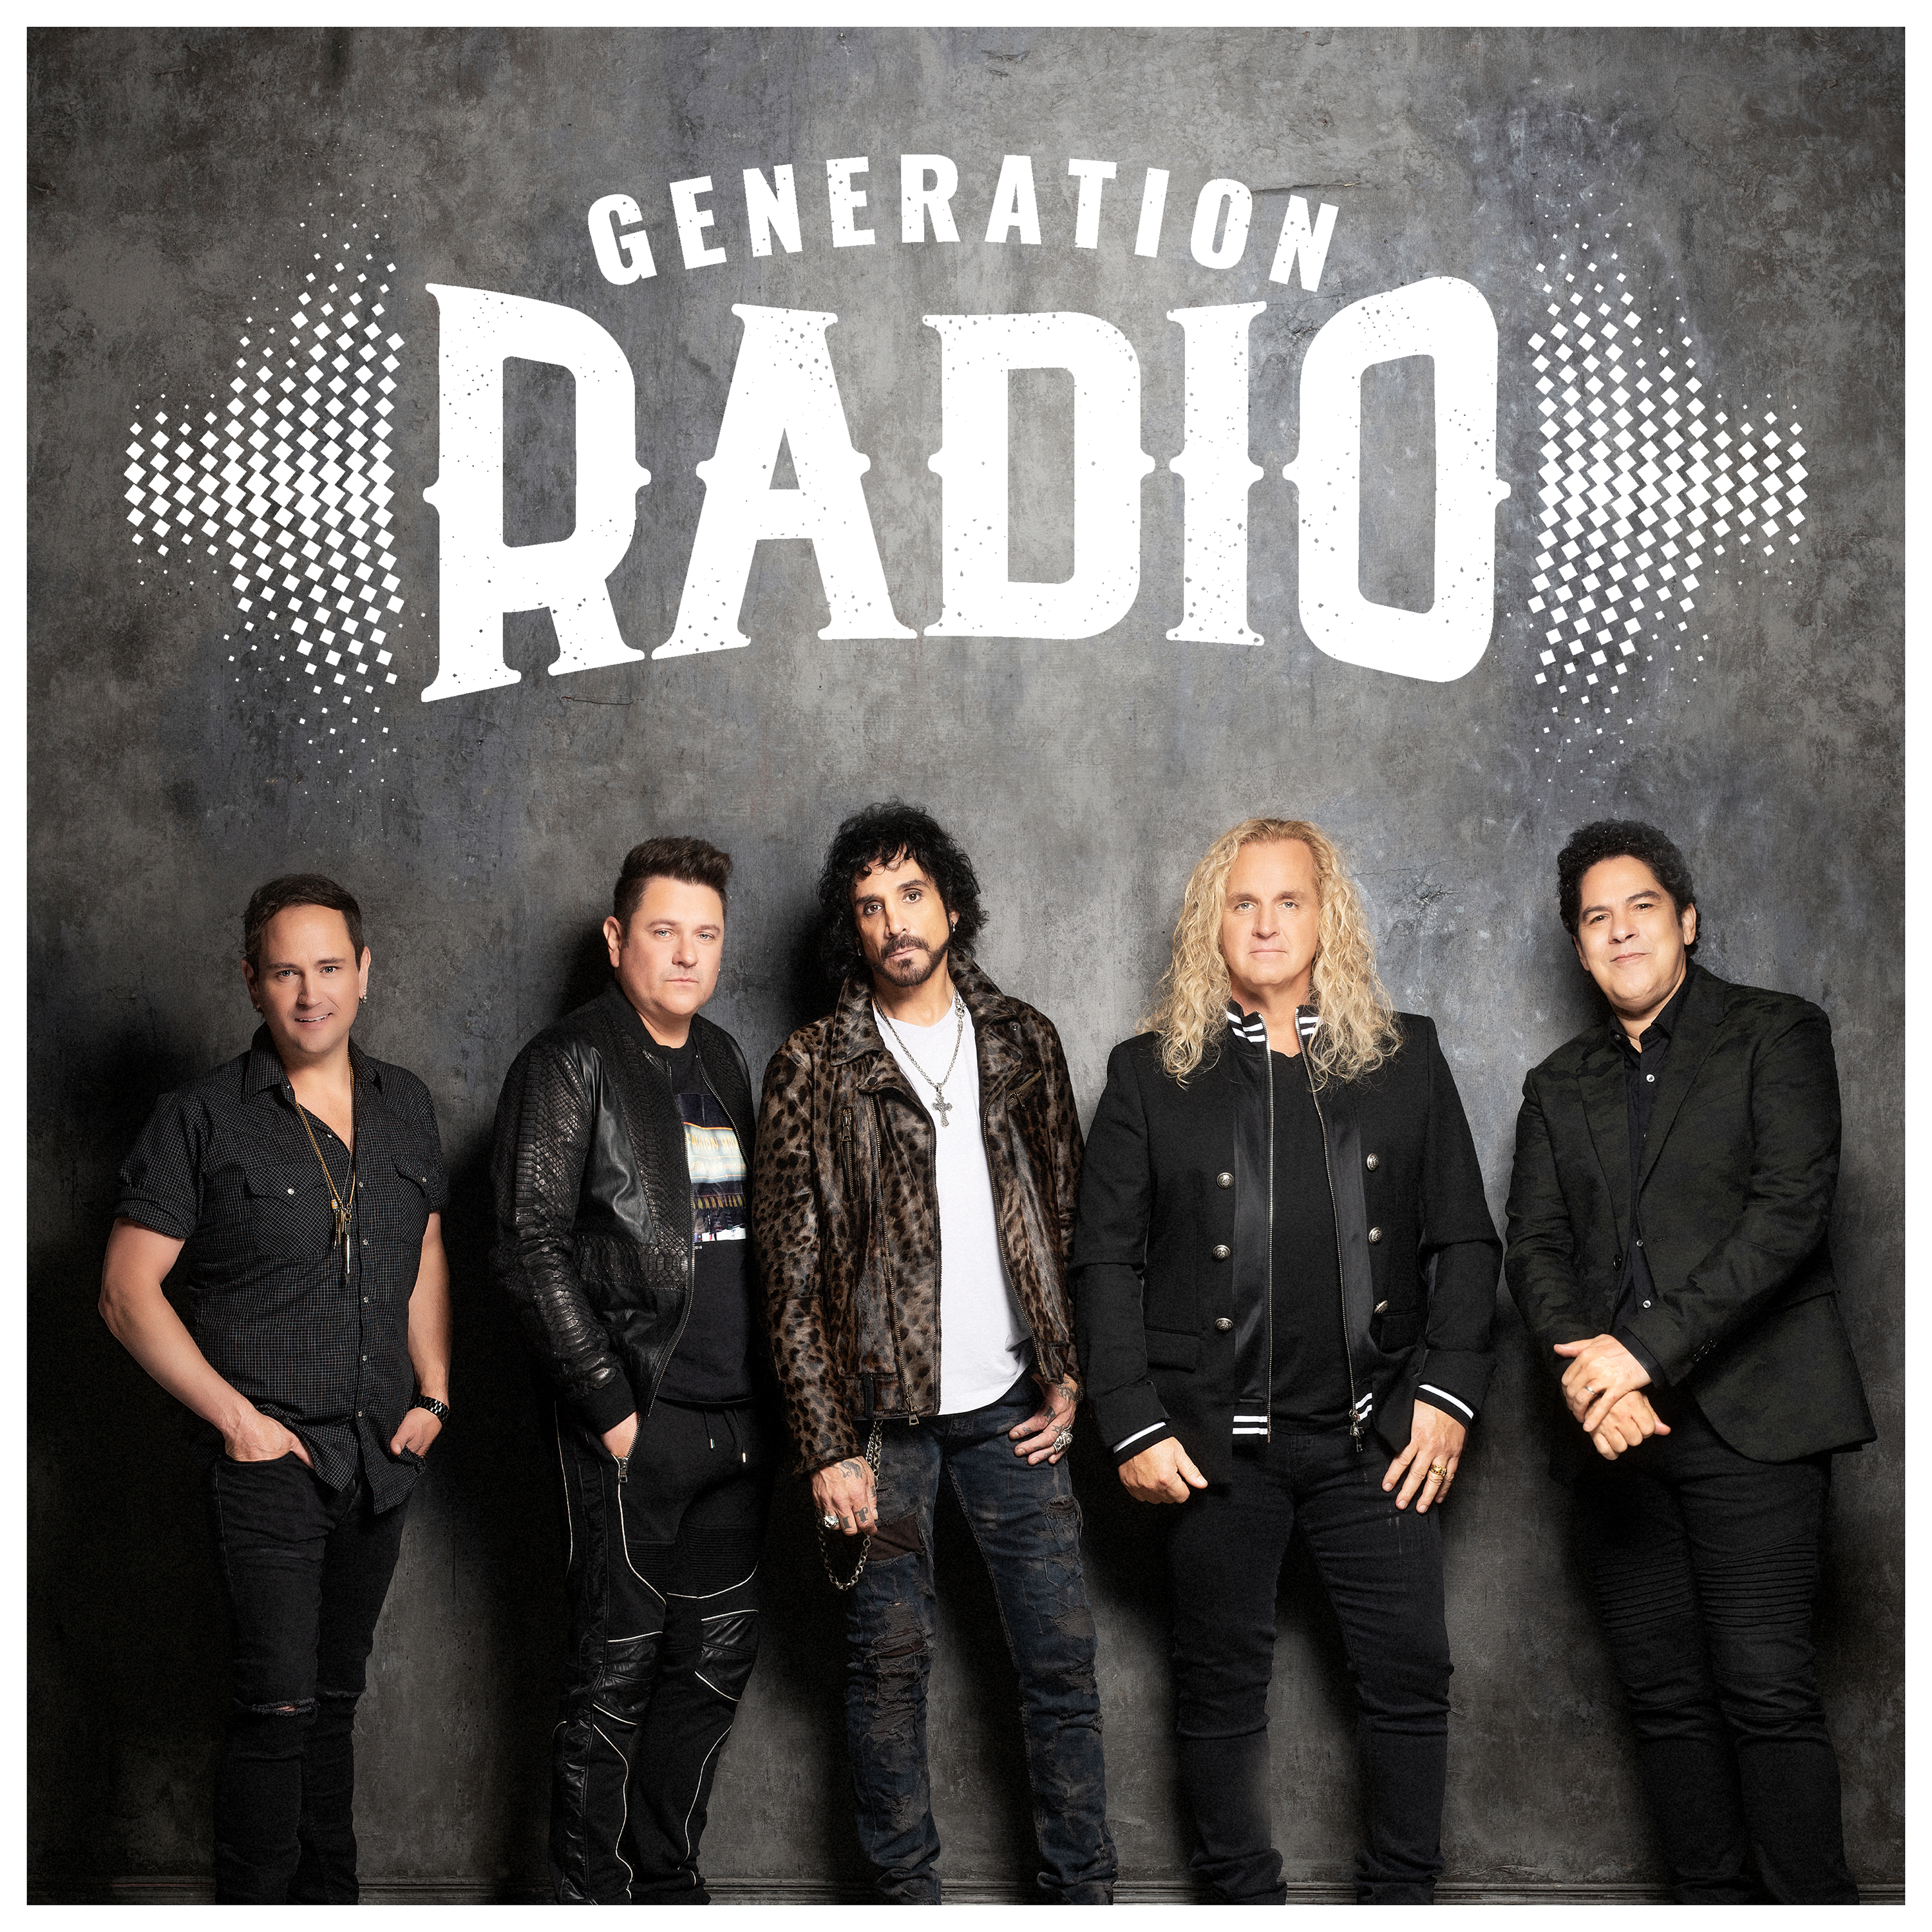 Generation Radio - Generation Radio - CD+DVD